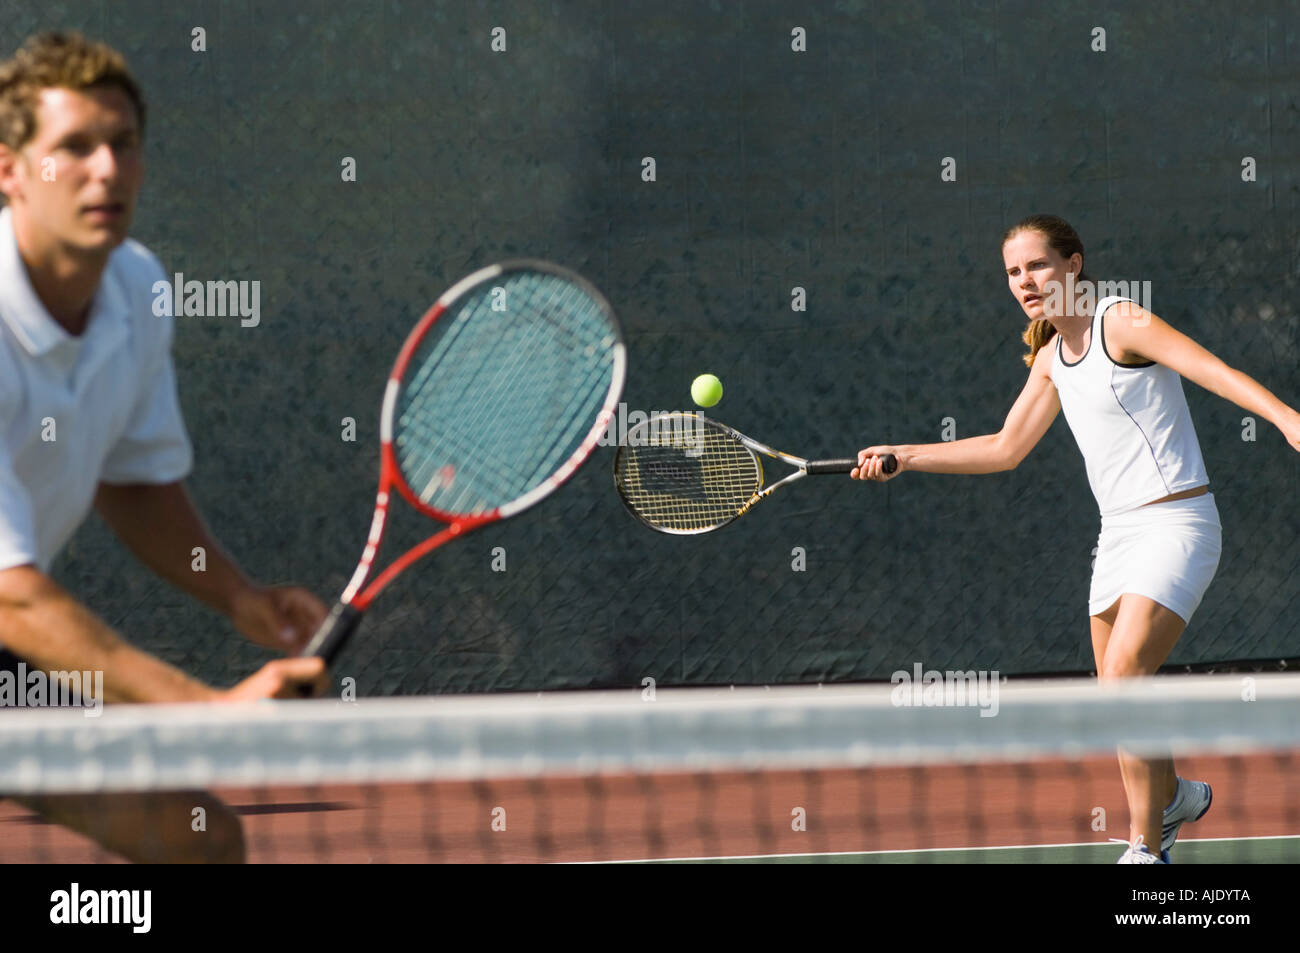 Double mixte player hitting tennis ball, partenaire debout près de net Banque D'Images